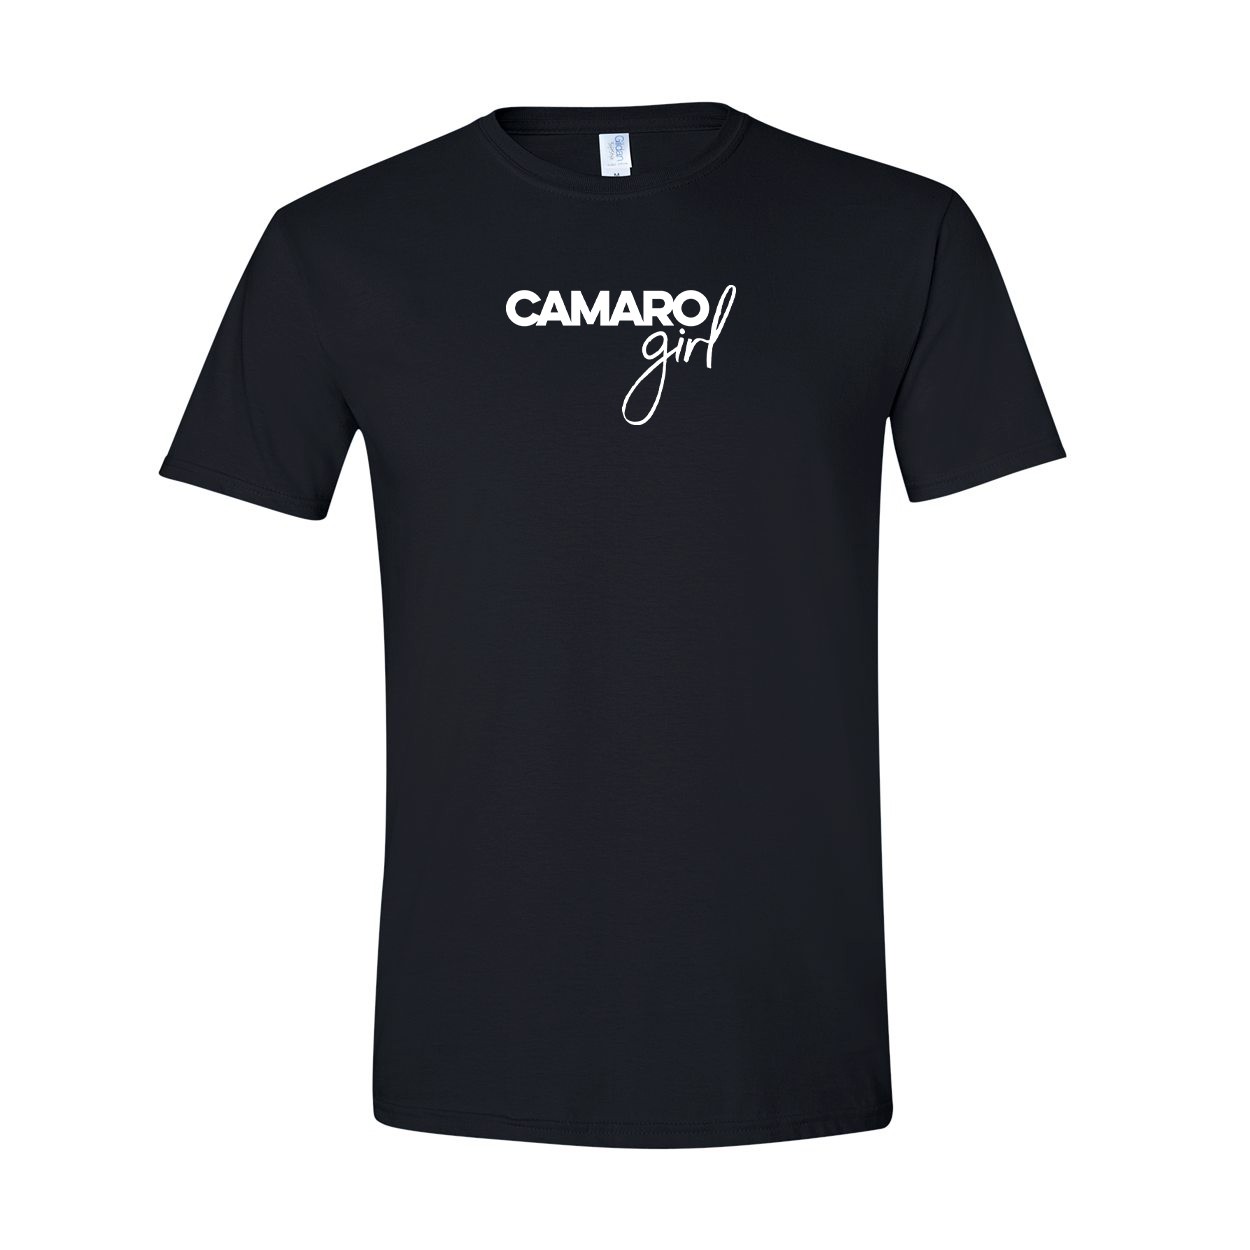 Camaro Minnesota Classic Camaro Girl T-Shirt Black (White Logo)